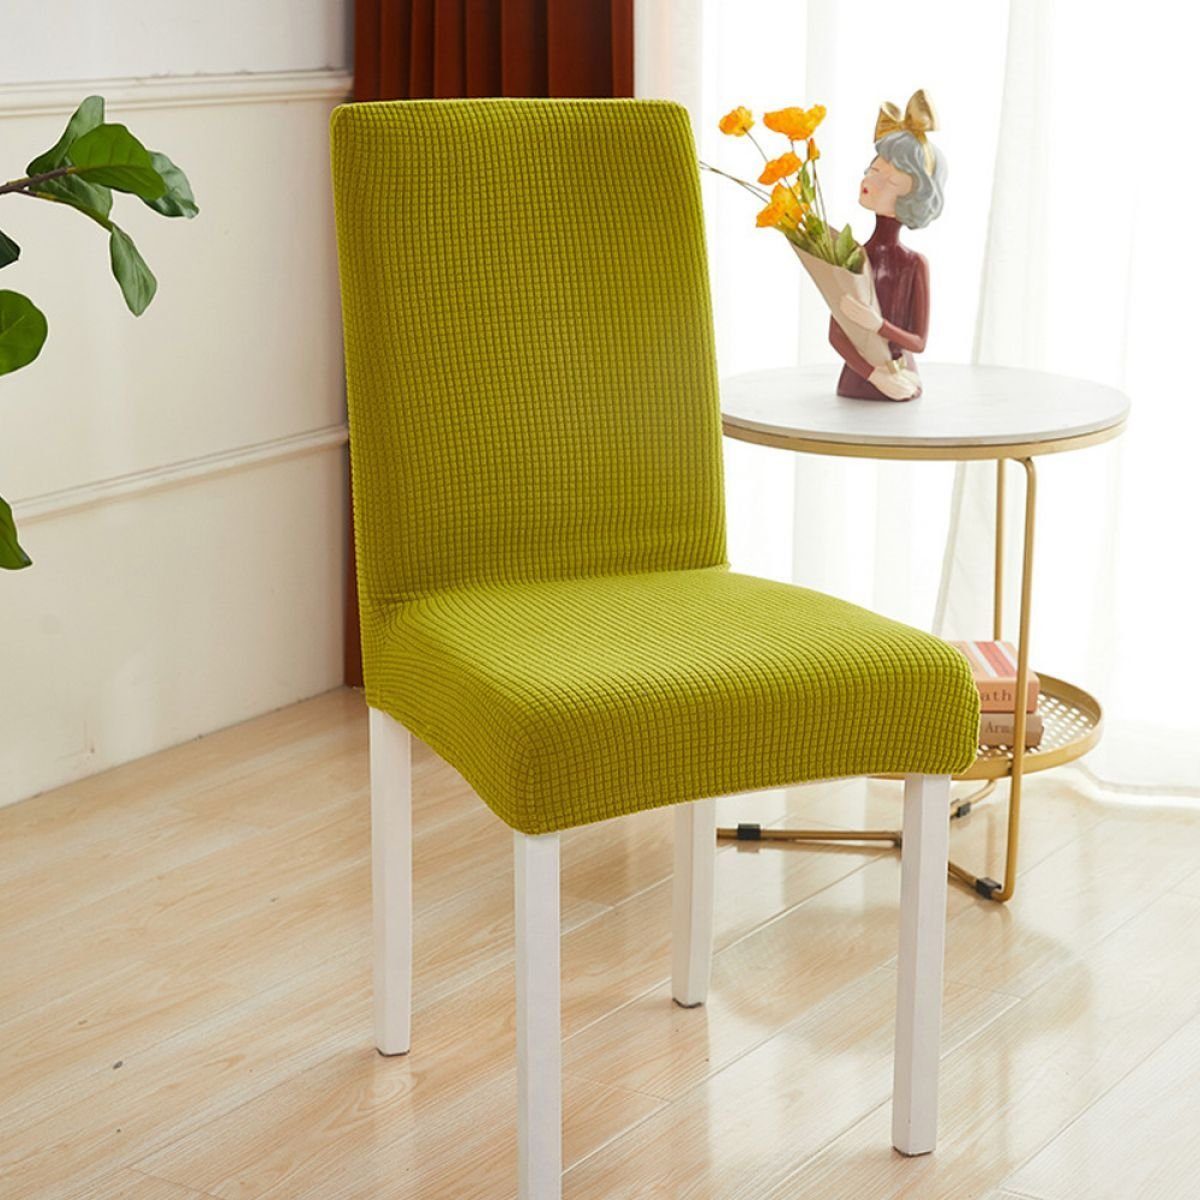 für Abnehmbare Stuhlbezug Grünlich-gelb Stuhlbezug Waschbar Juoungle Esszimmerstühle, Stretch